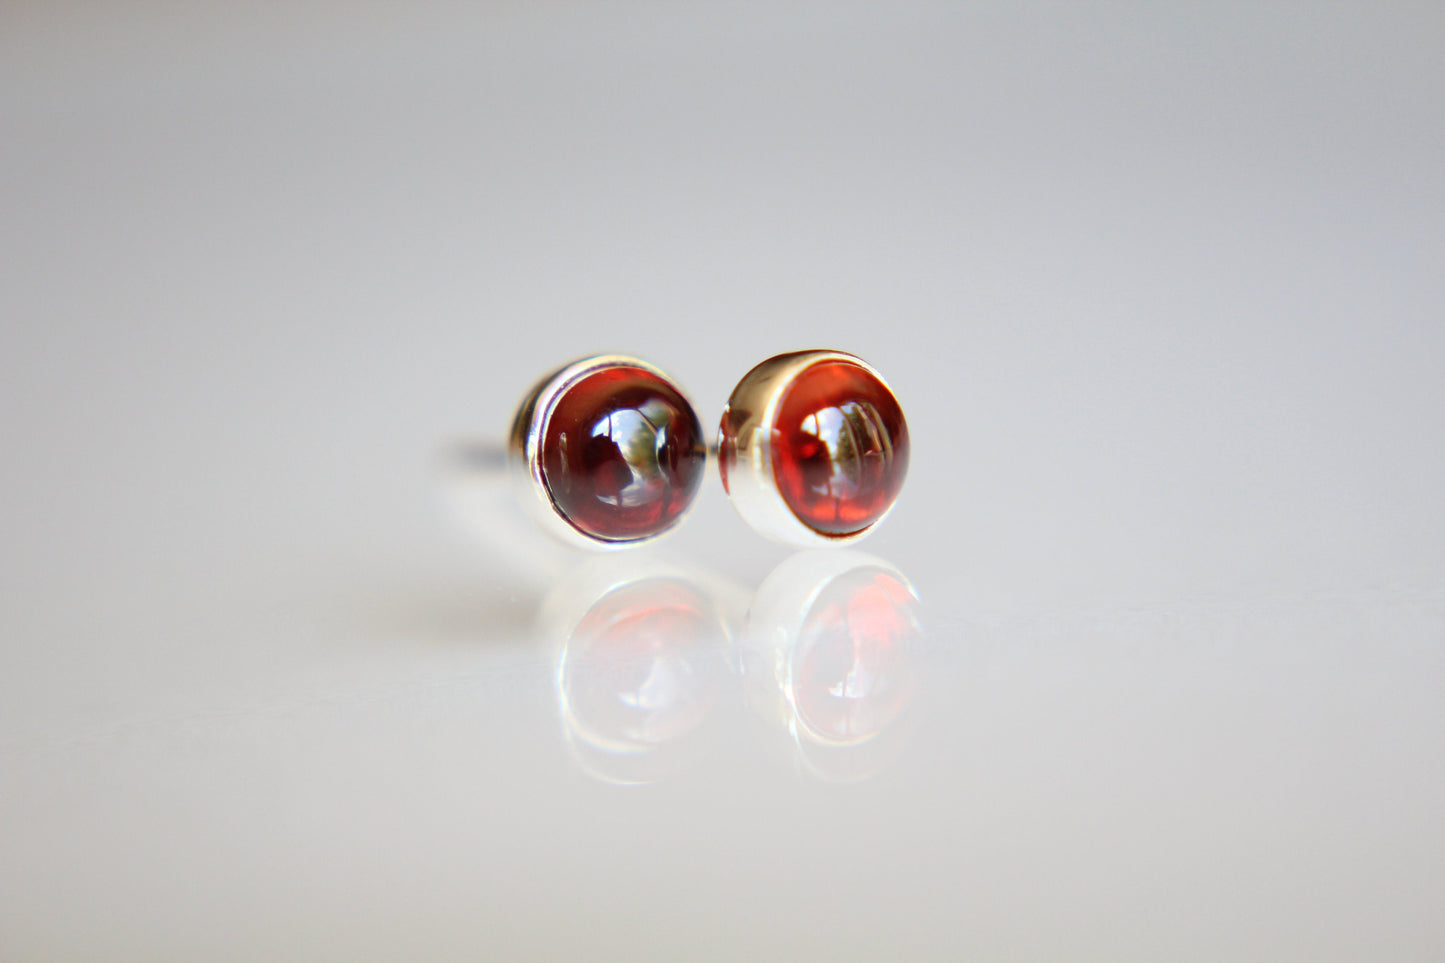 Garnet Earrings, Gemstone Earrings, Sterling Earrings, Post Earrings, Red Post Earrings, Small Earrings, Minimalist Earrings, Gift